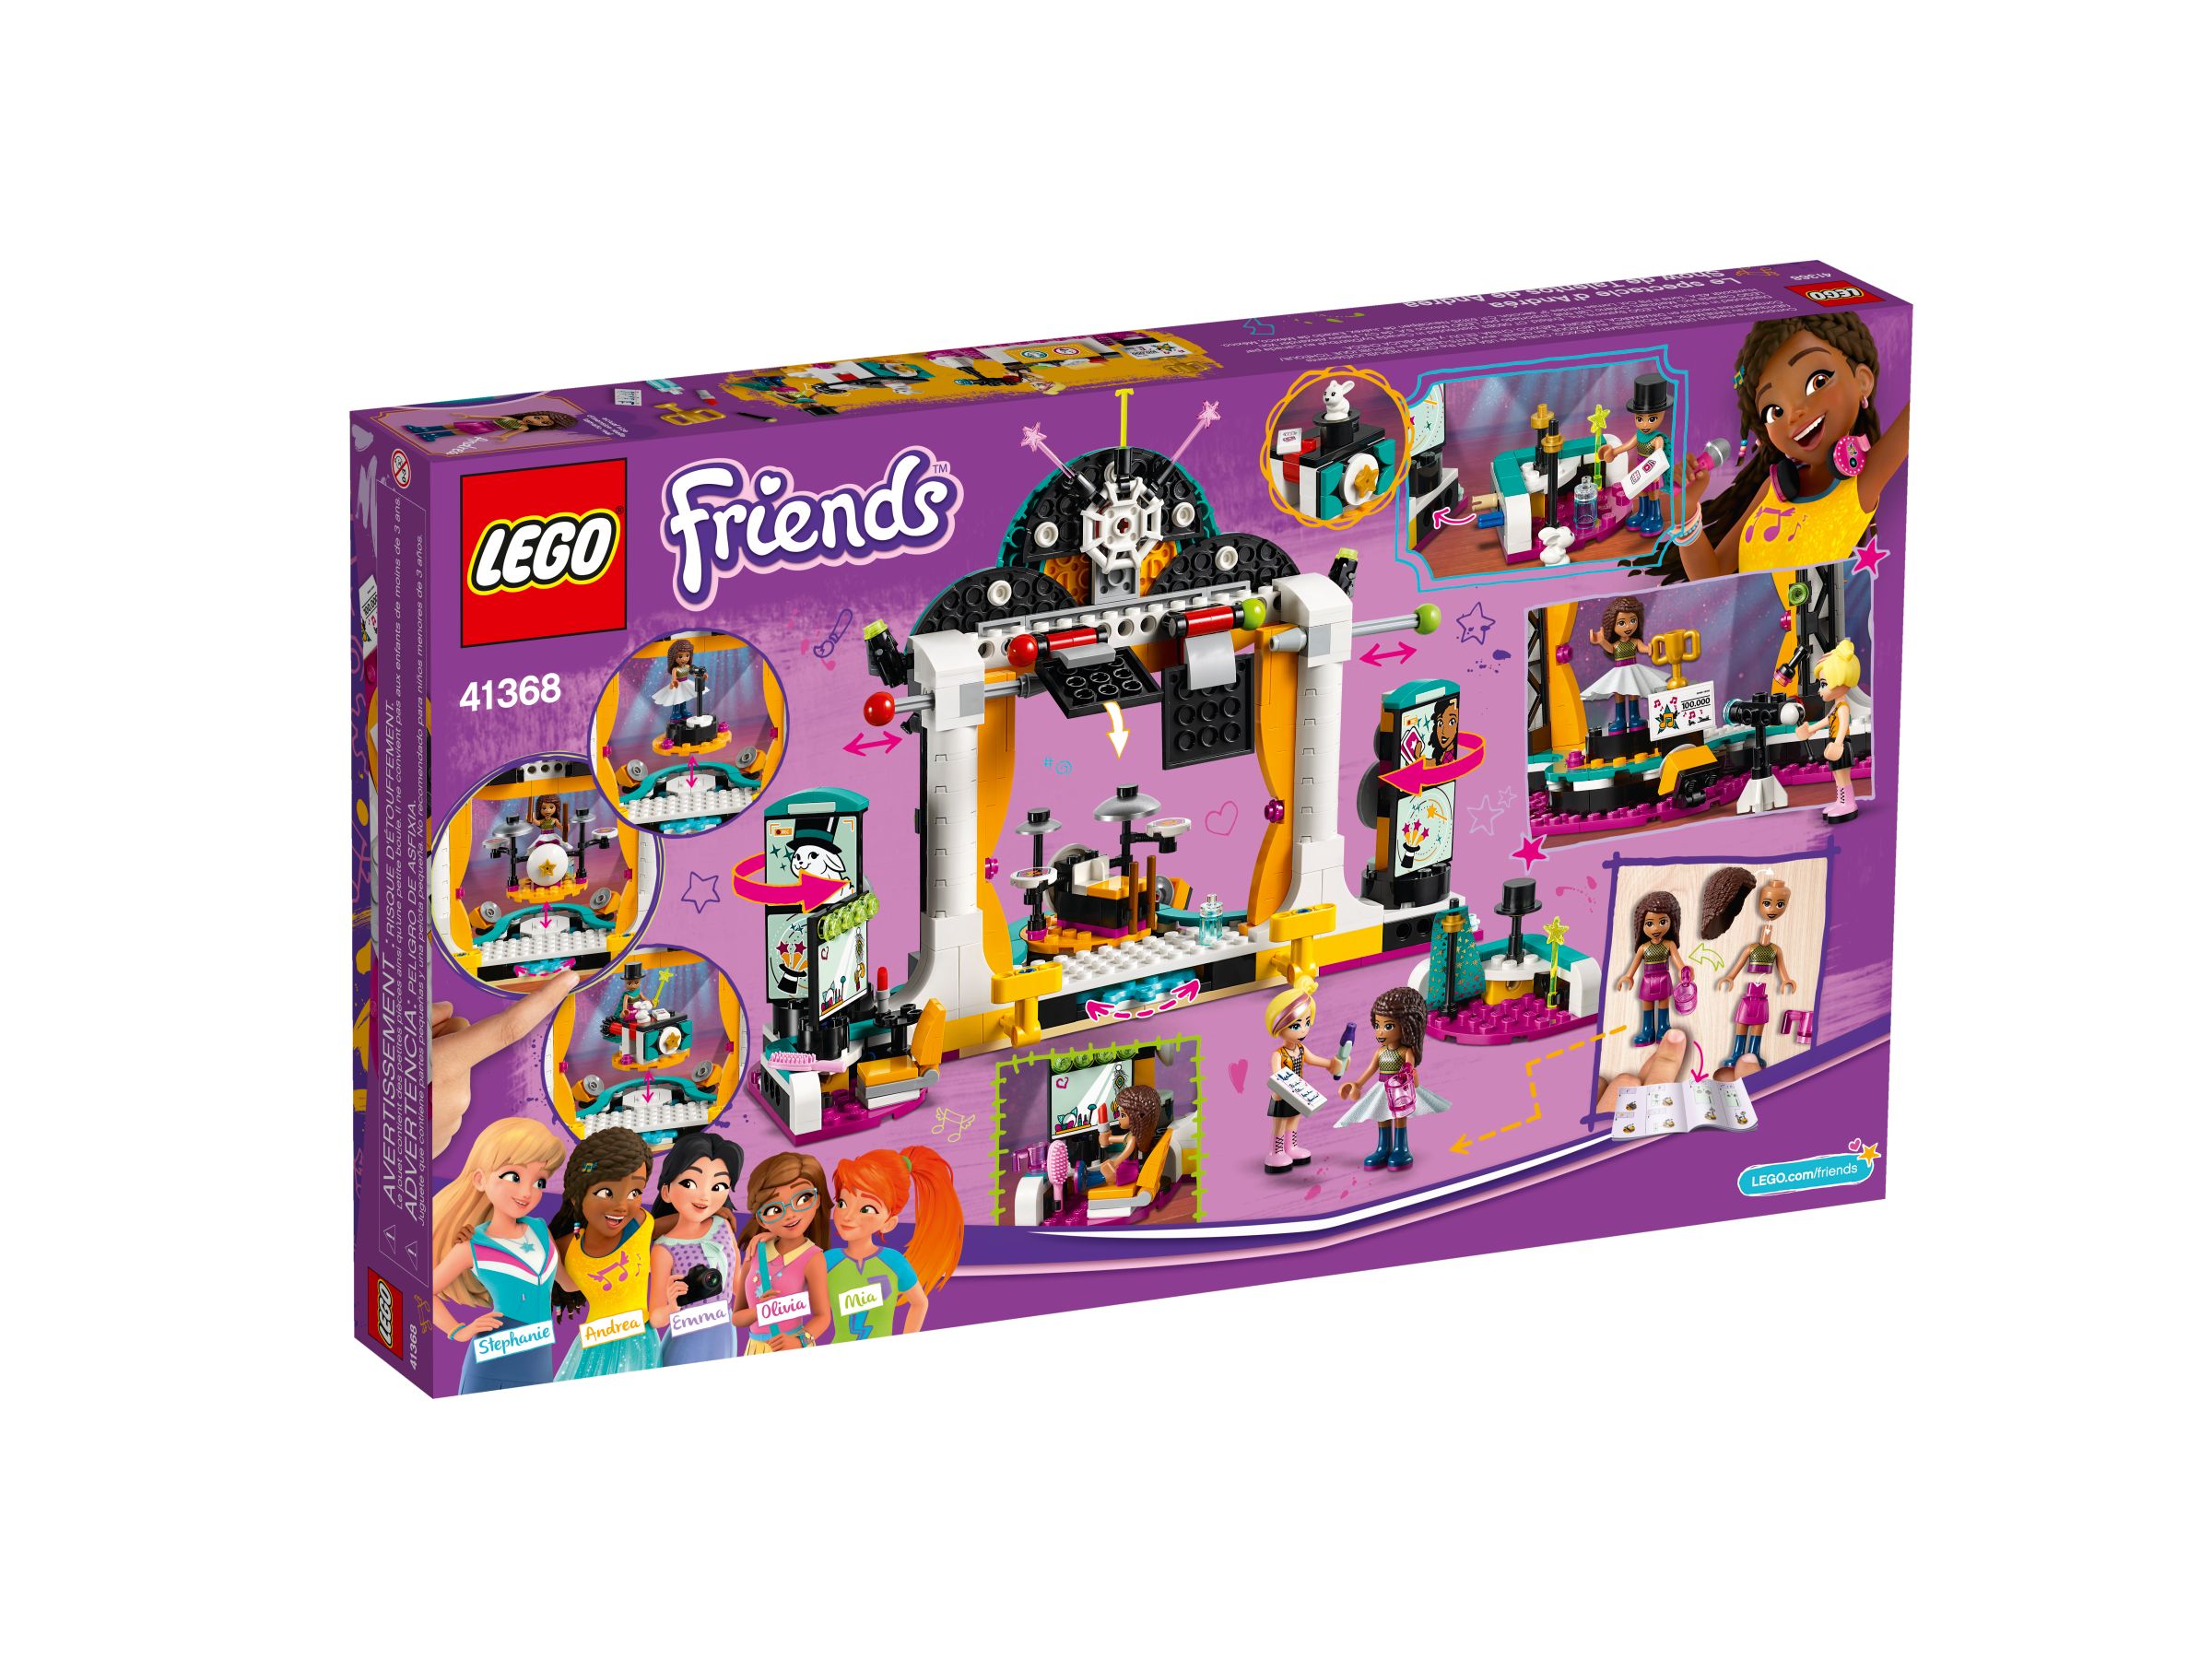 LEGO Friends 41368 Andreas Talentshow LEGO_41368_alt4.jpg